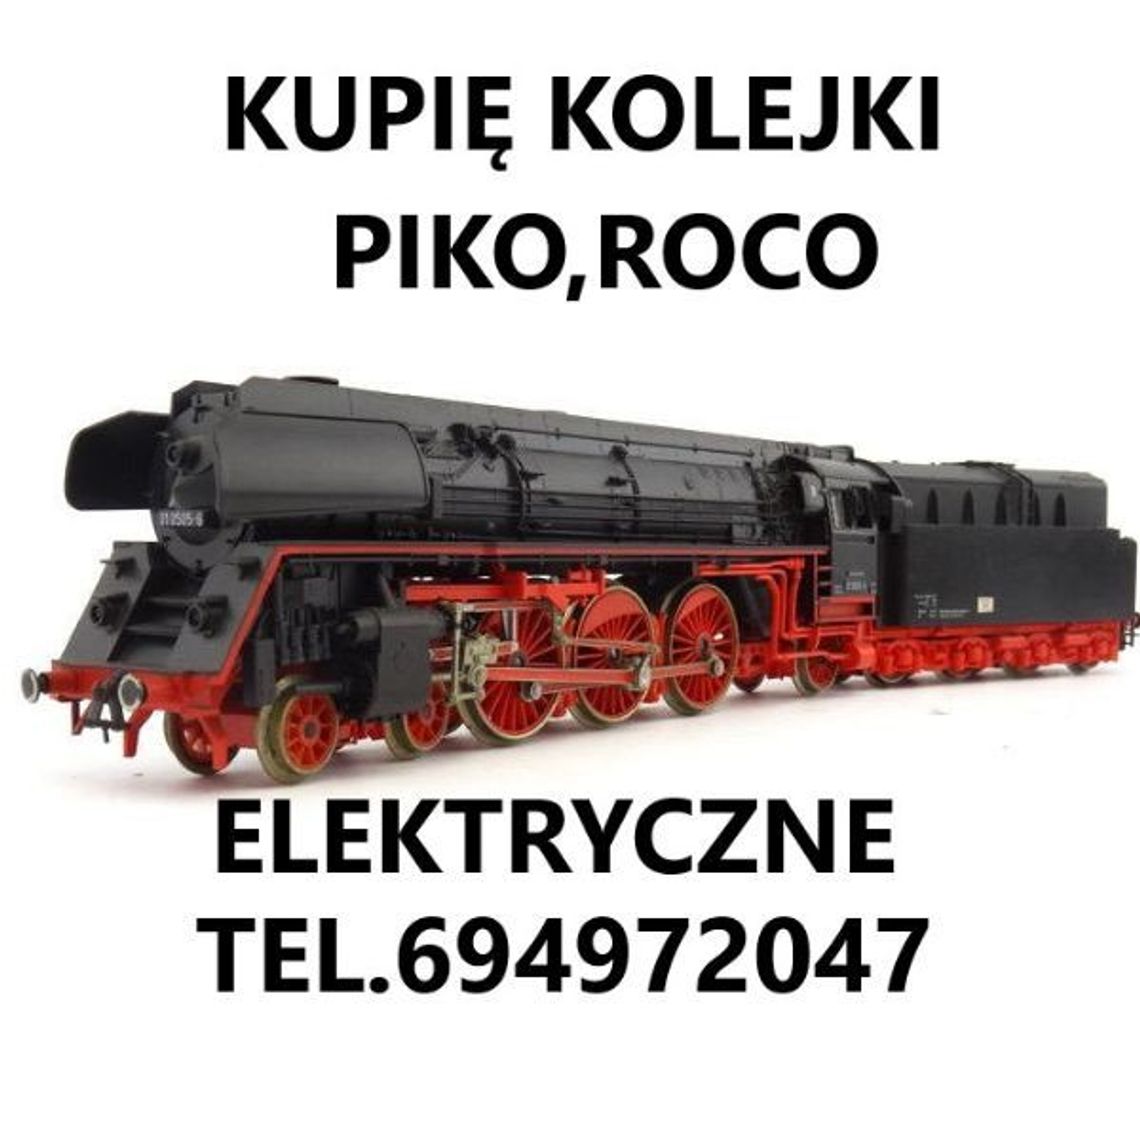 Kupię kolejki elektryczne lokomotywy,wagony Piko,Roco